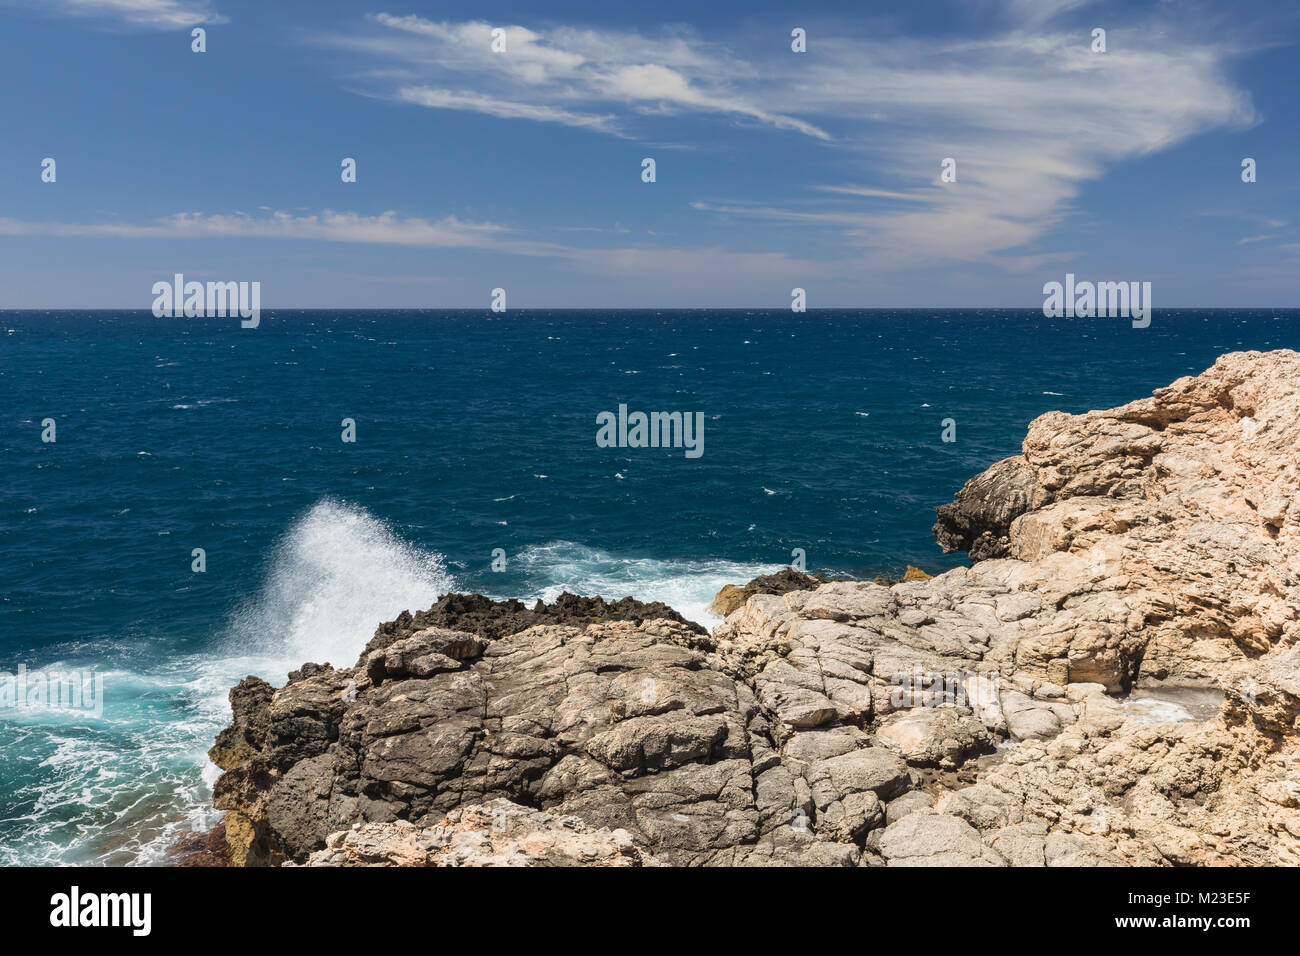 Une image montrant l'eau blanc embruns sur une côte rocheuse tourné à Anchor Bay, Malte. Banque D'Images